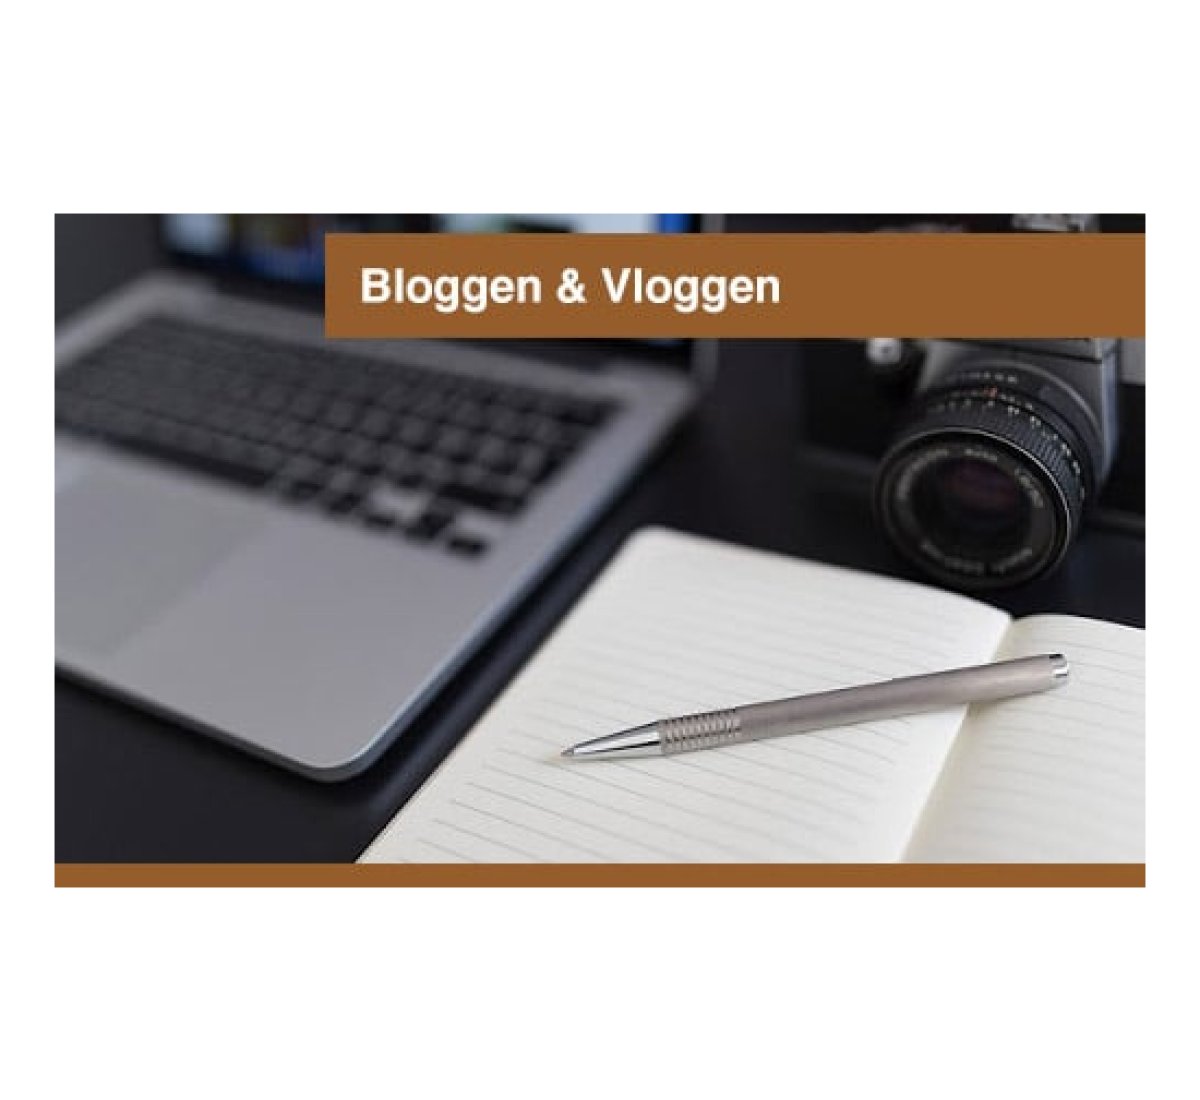 Bloggen & Vloggen Expert